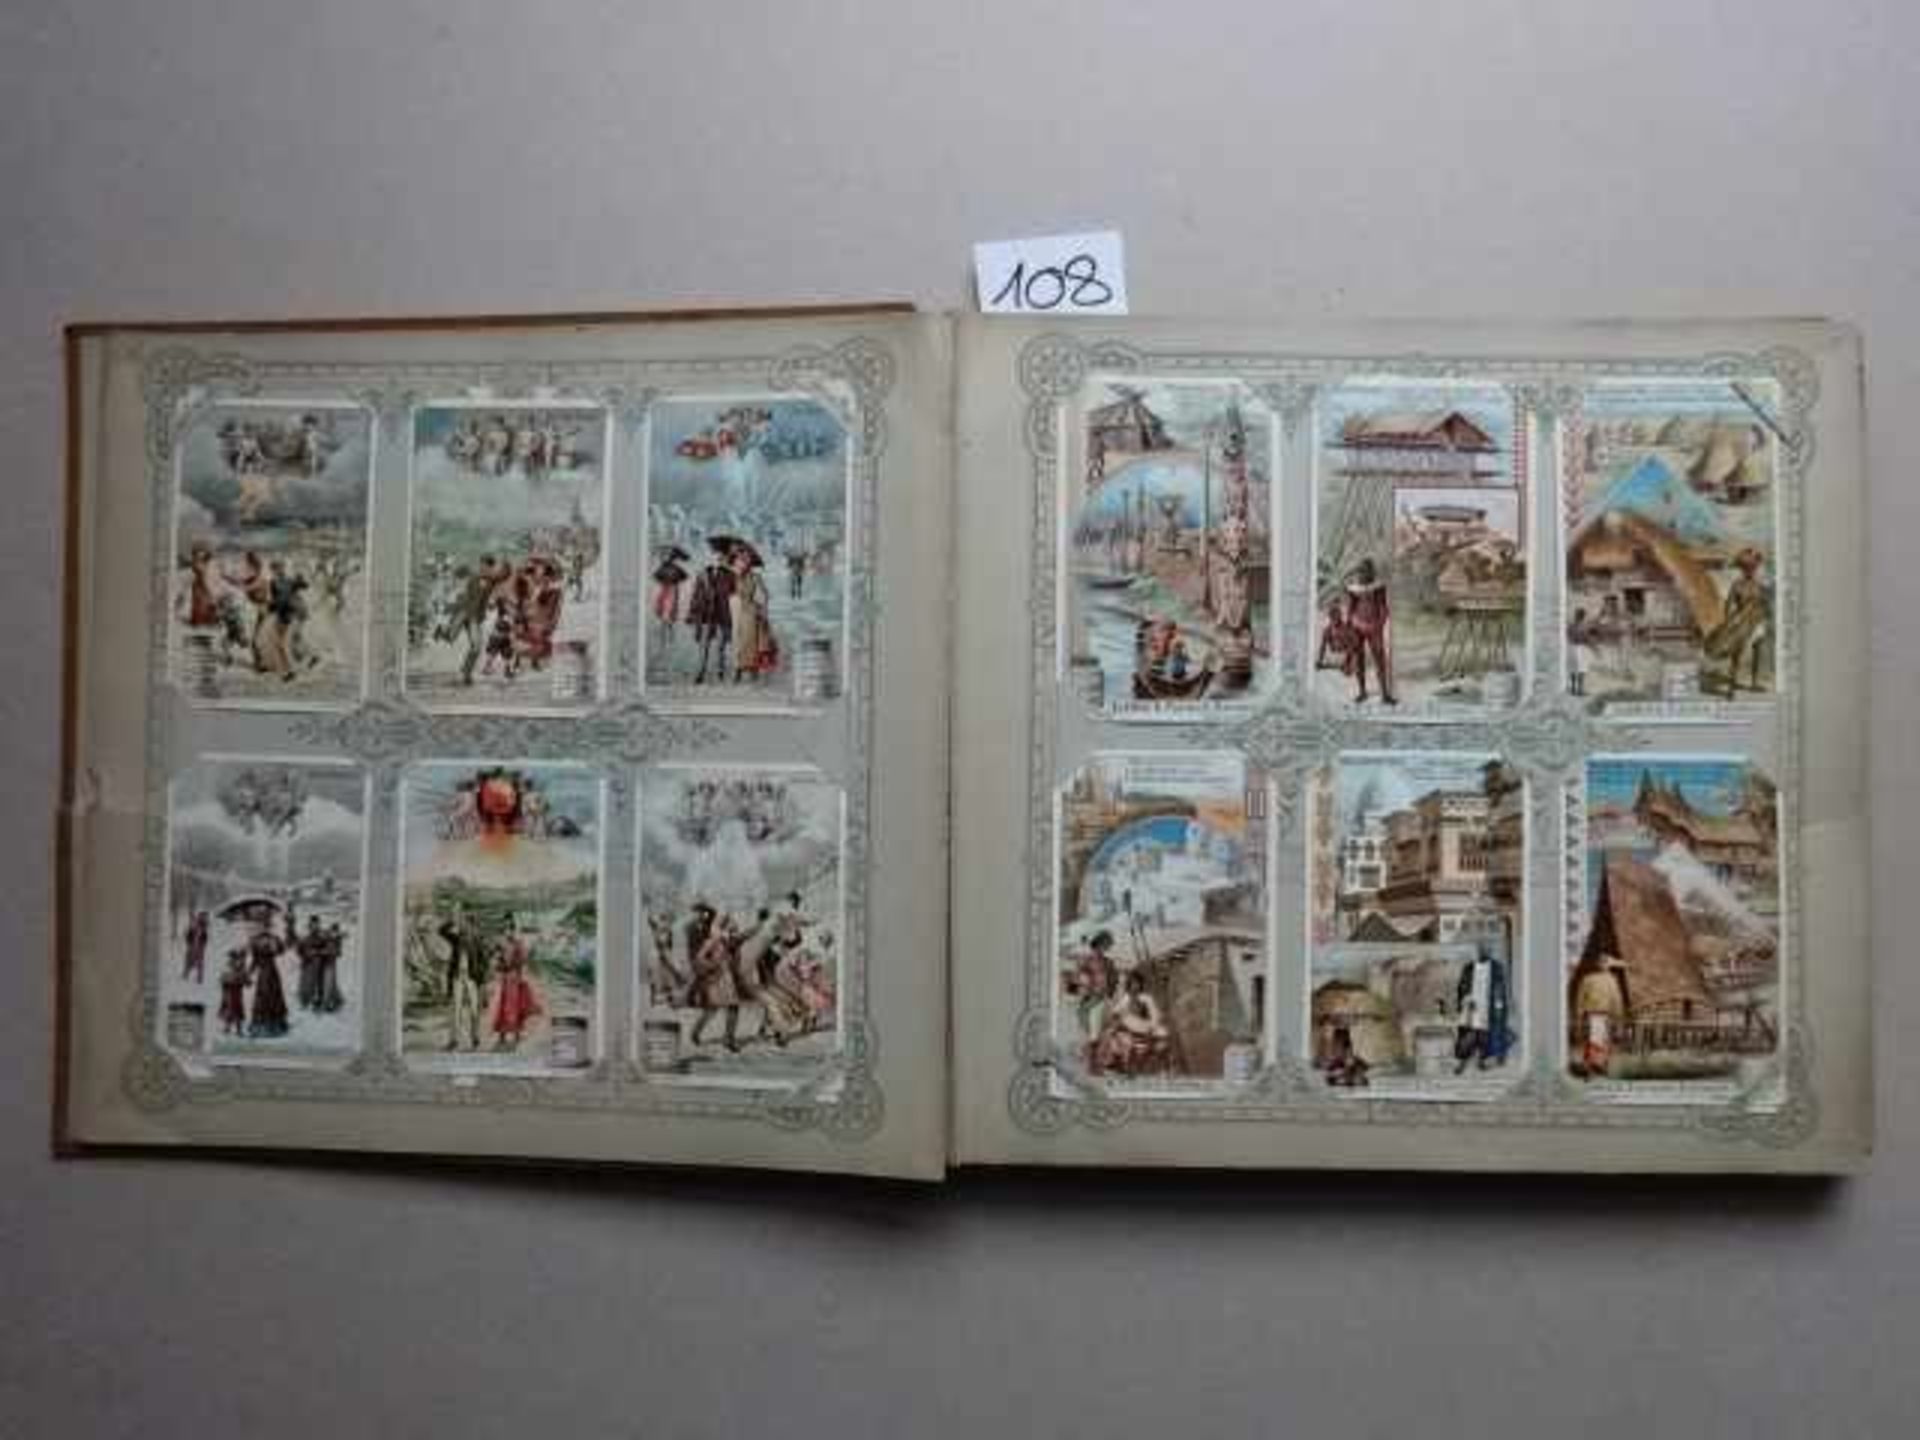 Liebig-Bilder.- Album mit 359 chromolithographischen Sammelbildern auf 30 Bll. Um 1900-1910. Qu.-4°. - Bild 2 aus 3